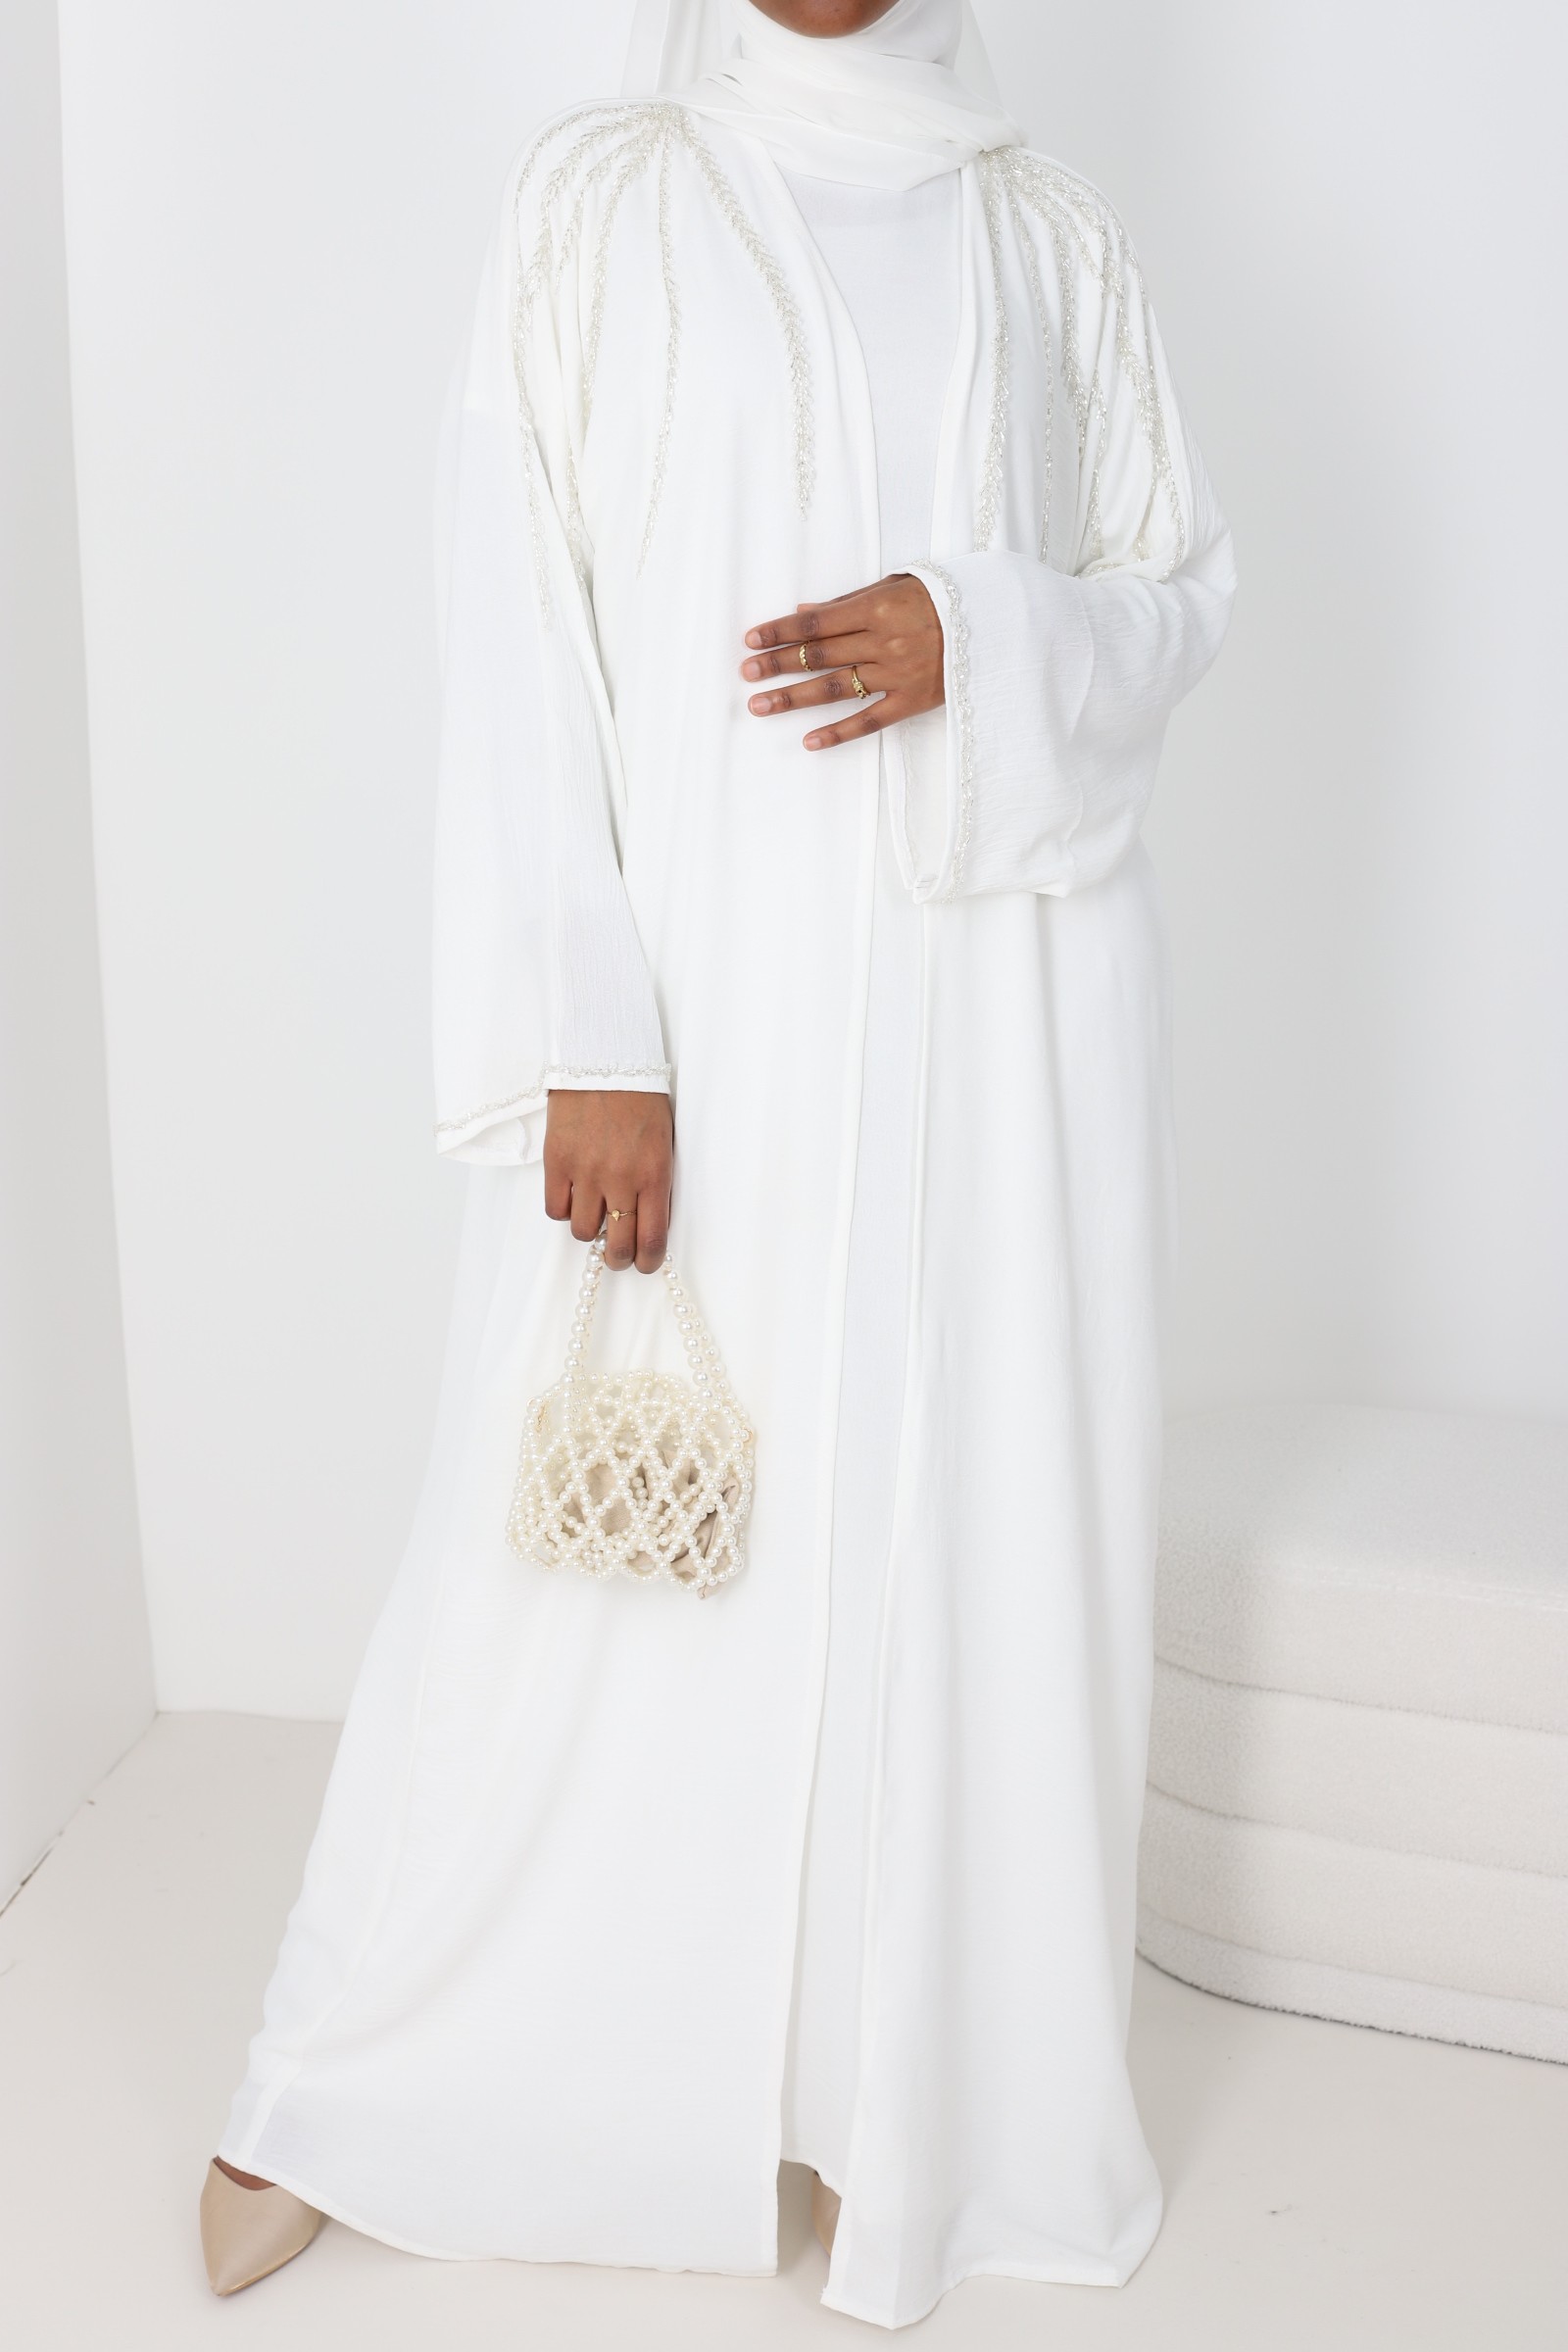 Abaya Dubaï Rawah white